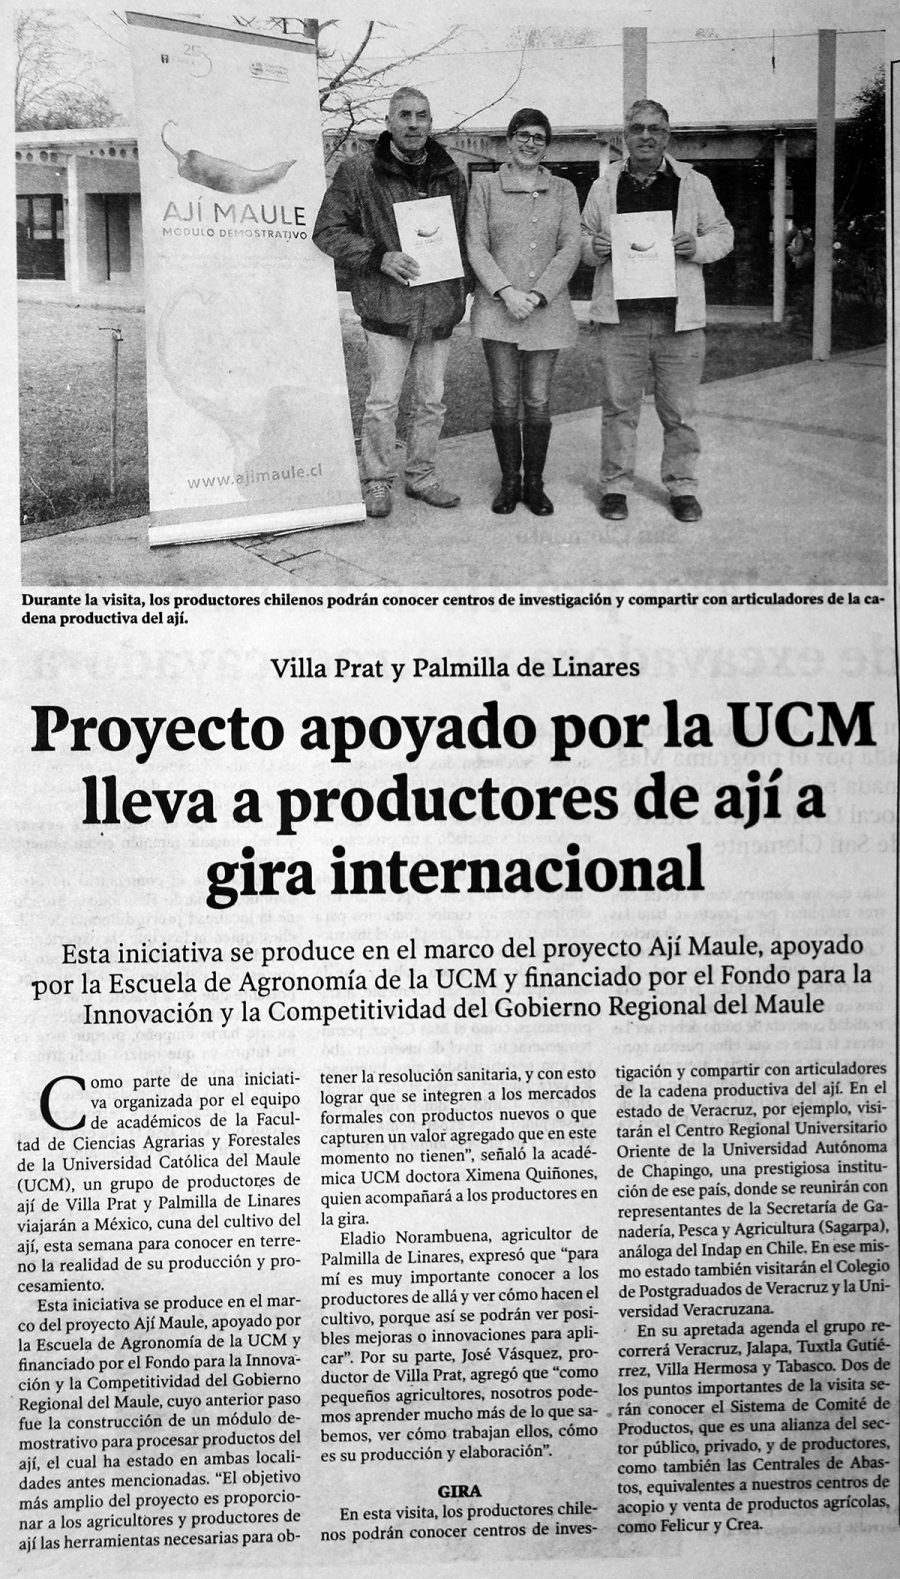 05 de junio en Diario El Centro: “Proyecto apoyado por la UCM lleva a productores de ají a gira internacional”